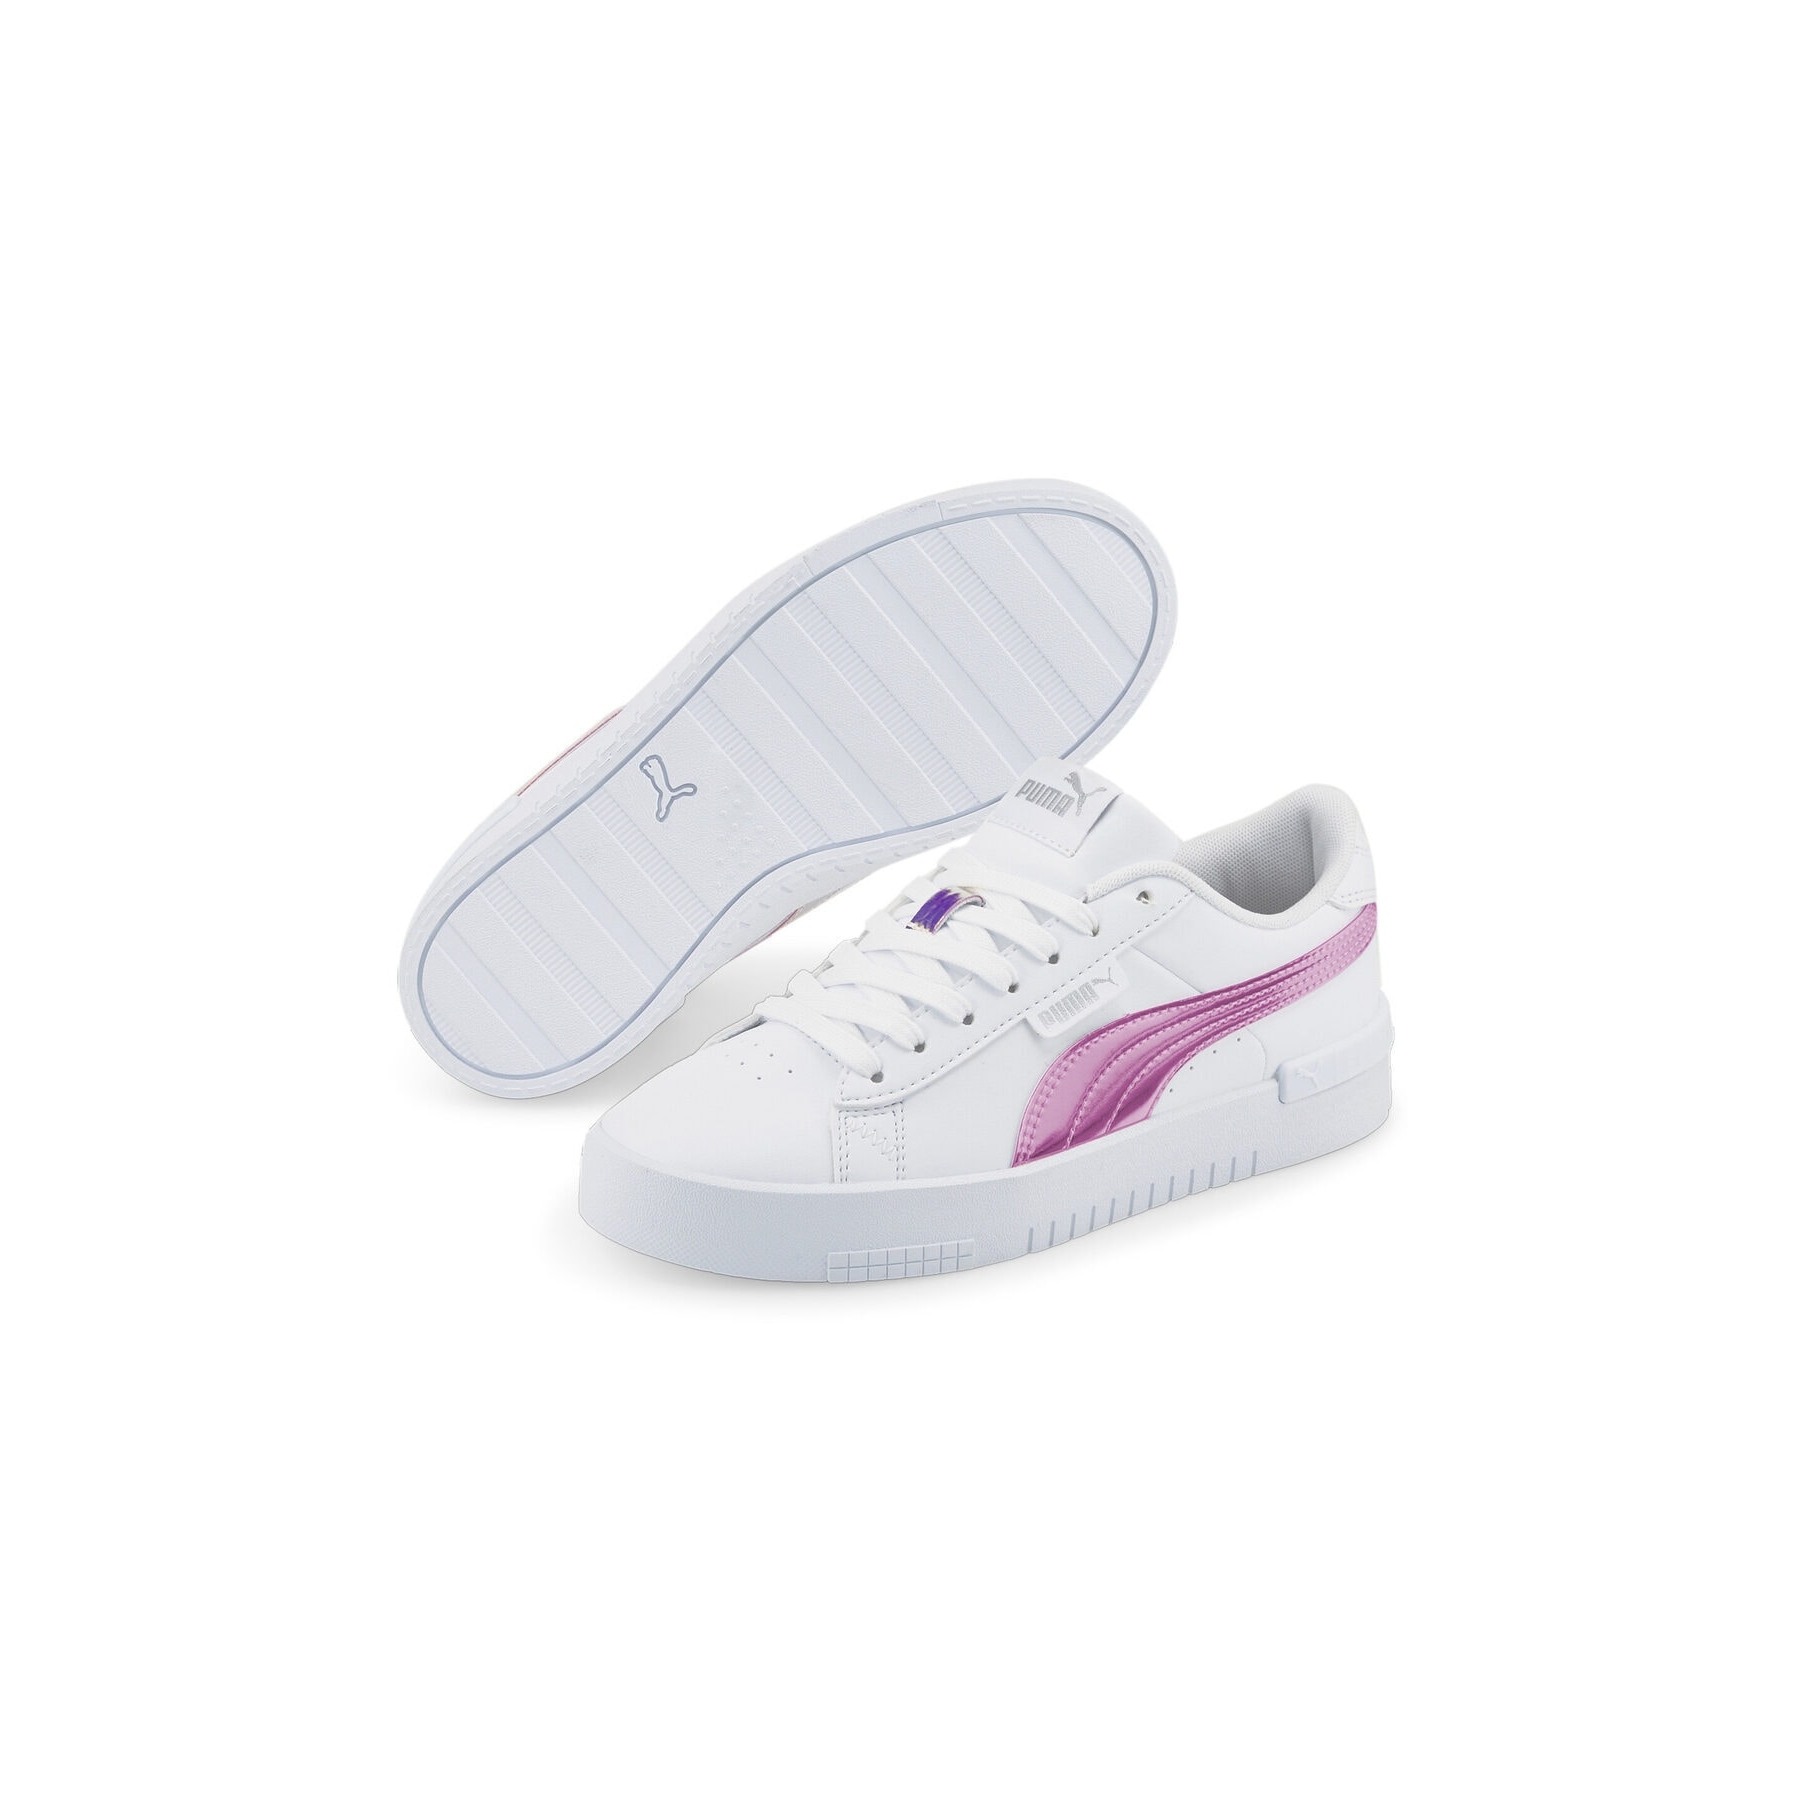 Puma Jada Holo Beyaz Spor Ayakkabı (383759-01)